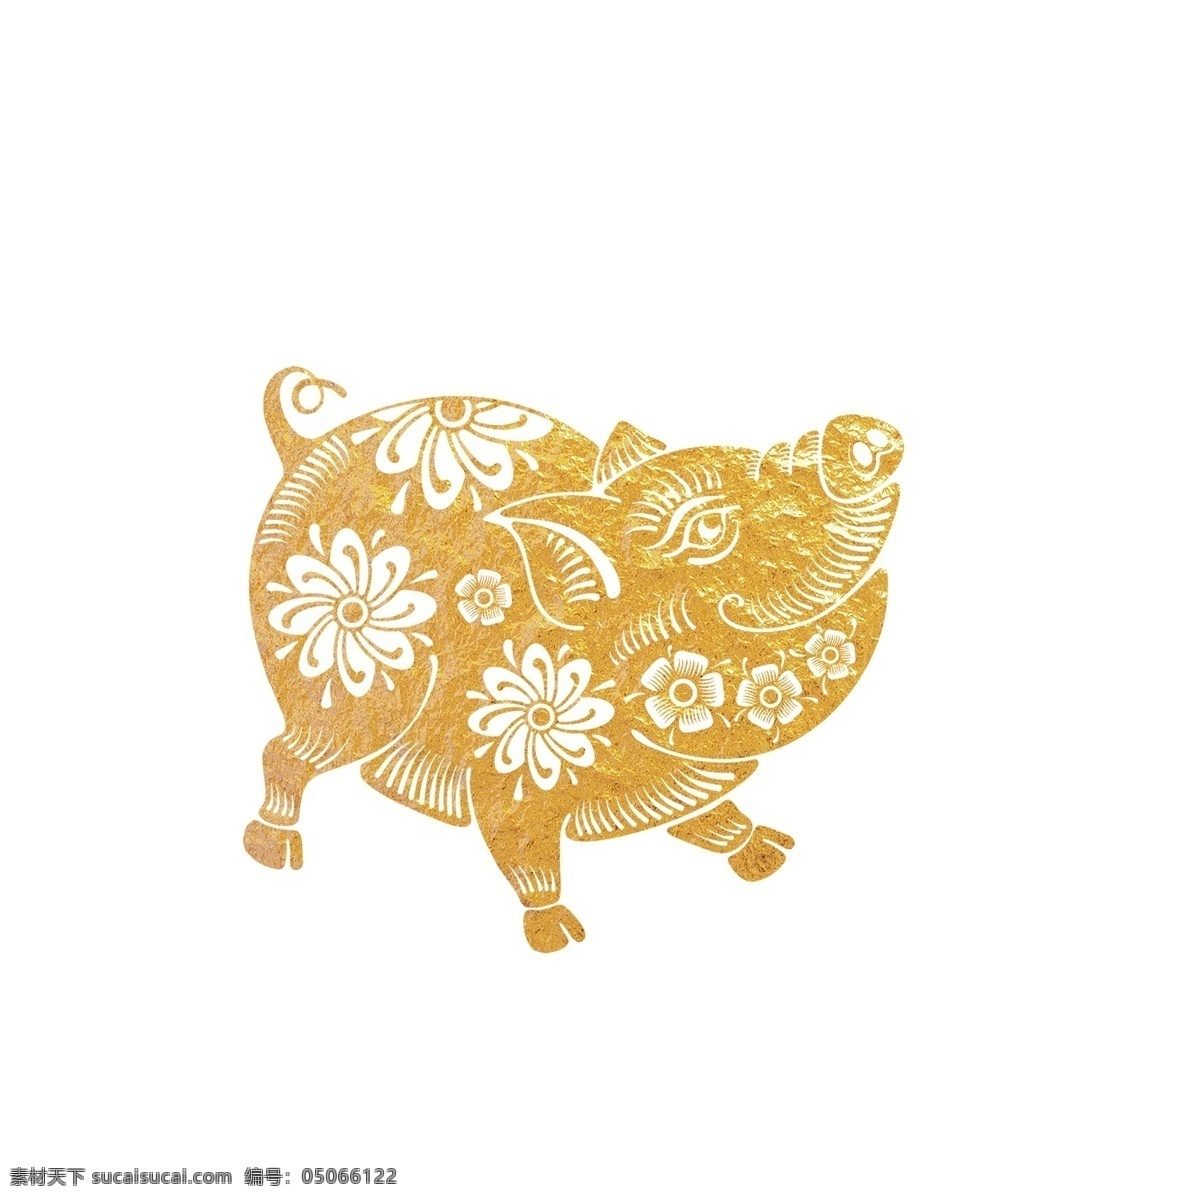 金色 2019 猪年 花 猪 元素 金猪 装饰图案 创意元素 手绘元素 花猪 新年 猪年元素 元素装饰 psd元素